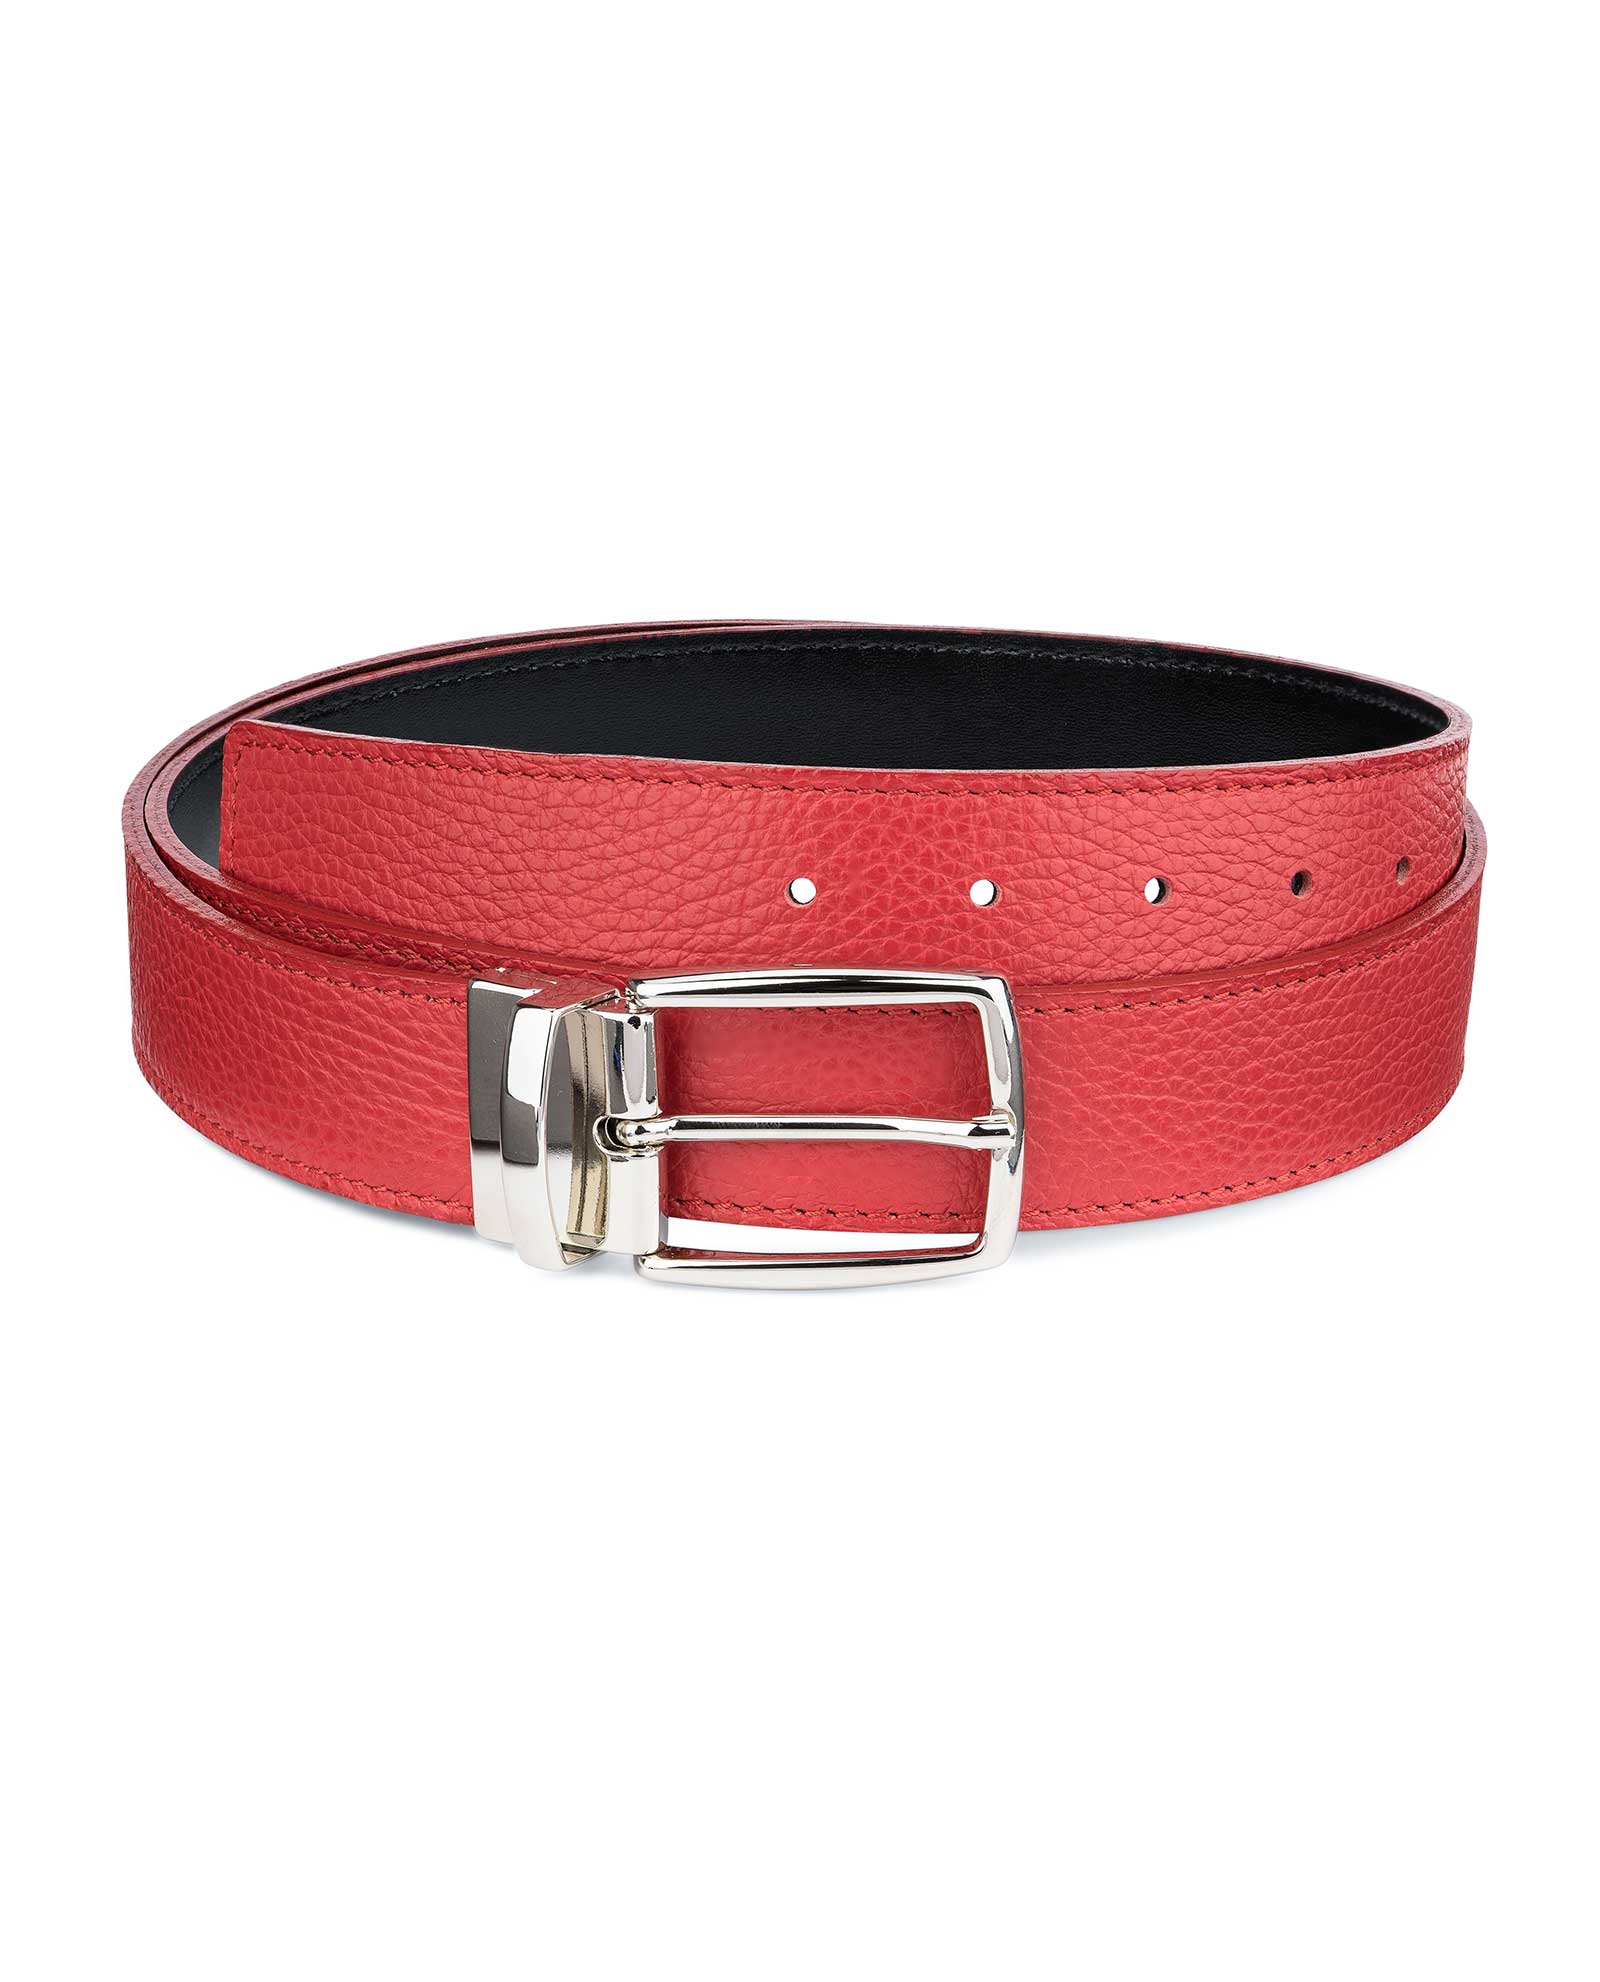 Buy Red Reversible Belt | Twist Buckle | LeatherBeltsOnline.com